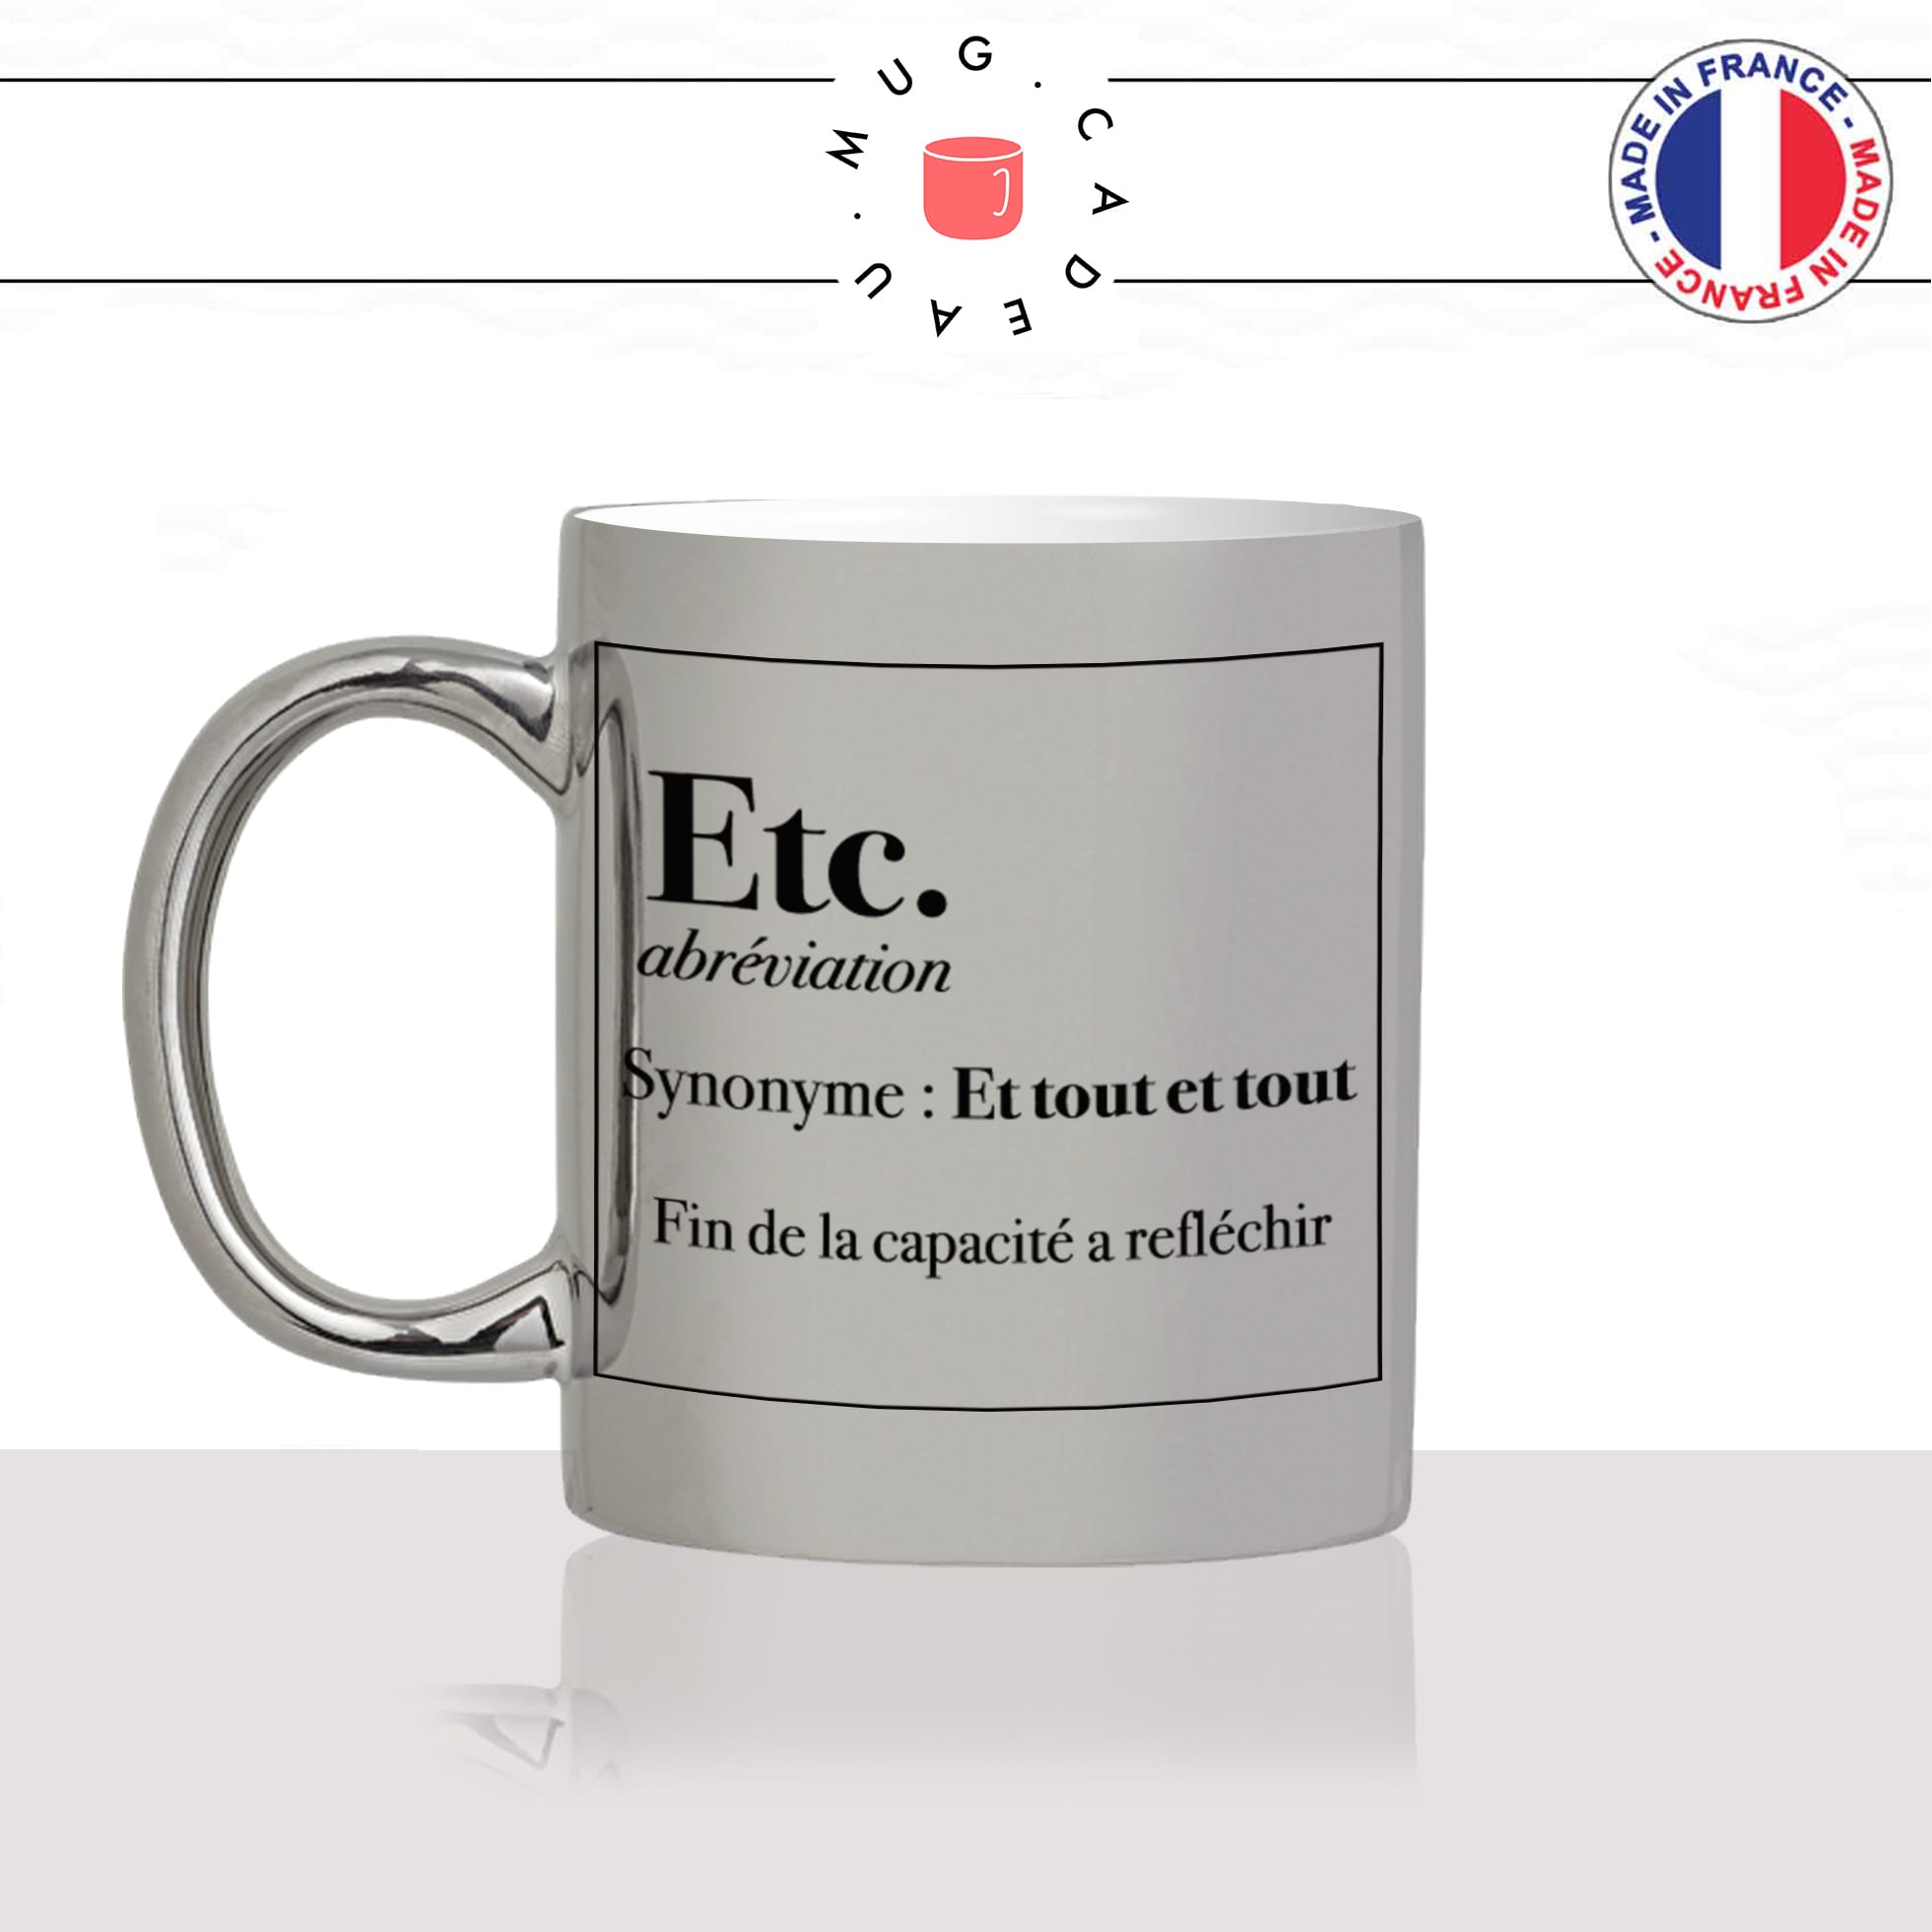 mug-tasse-argent-argenté-silver-etc-definition-etcetera-synonymes-et-tout-humour-drole-france-idée-cadeau-fun-cool-café-thé-original-min